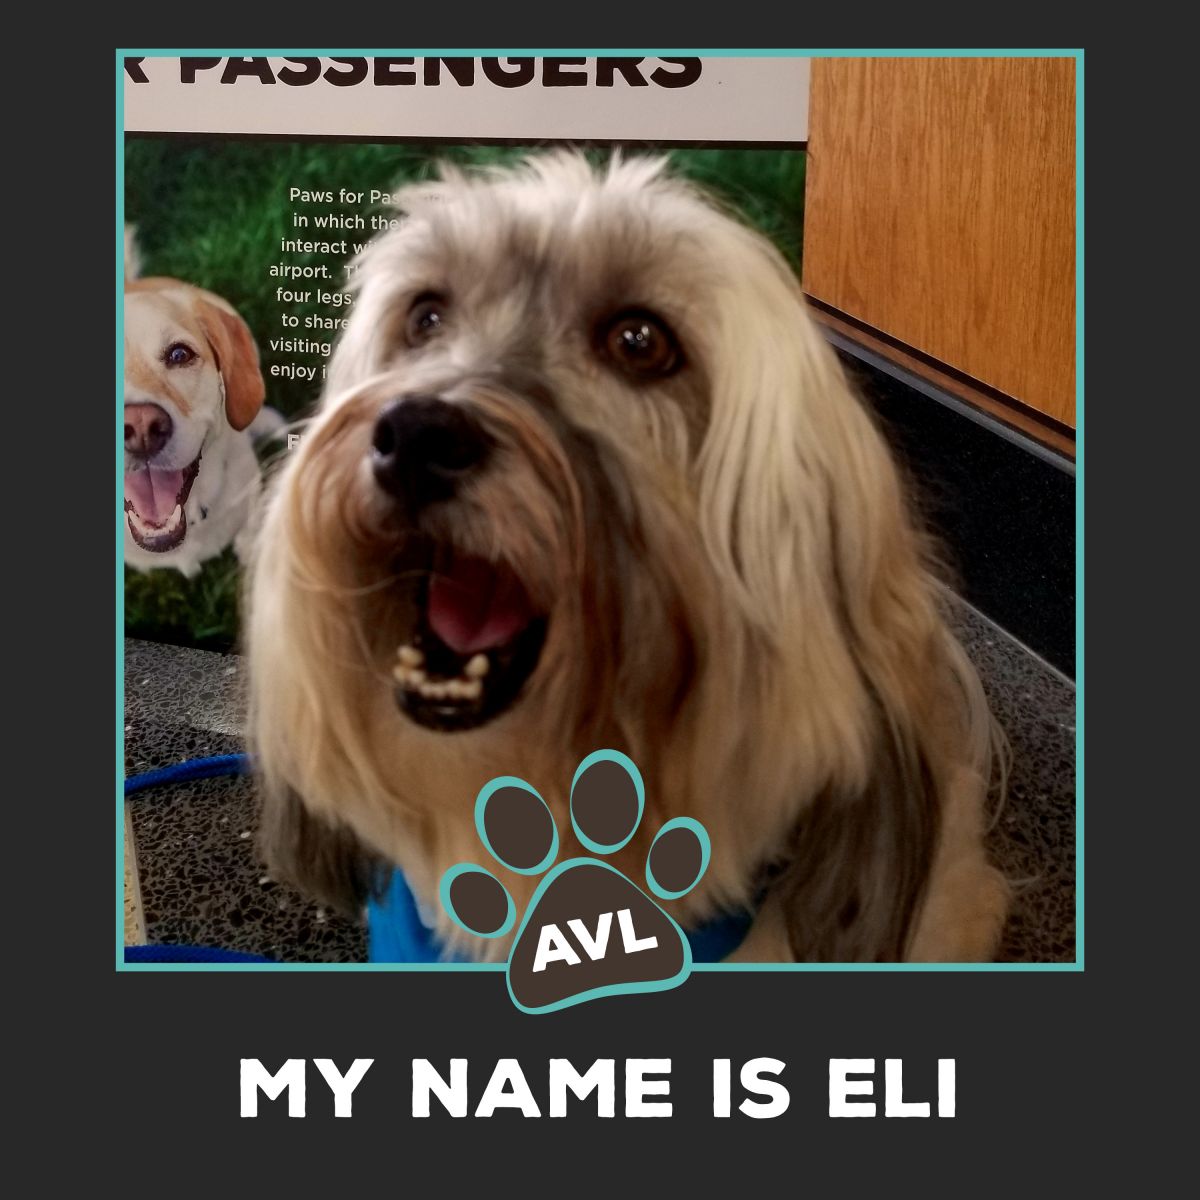 Eli